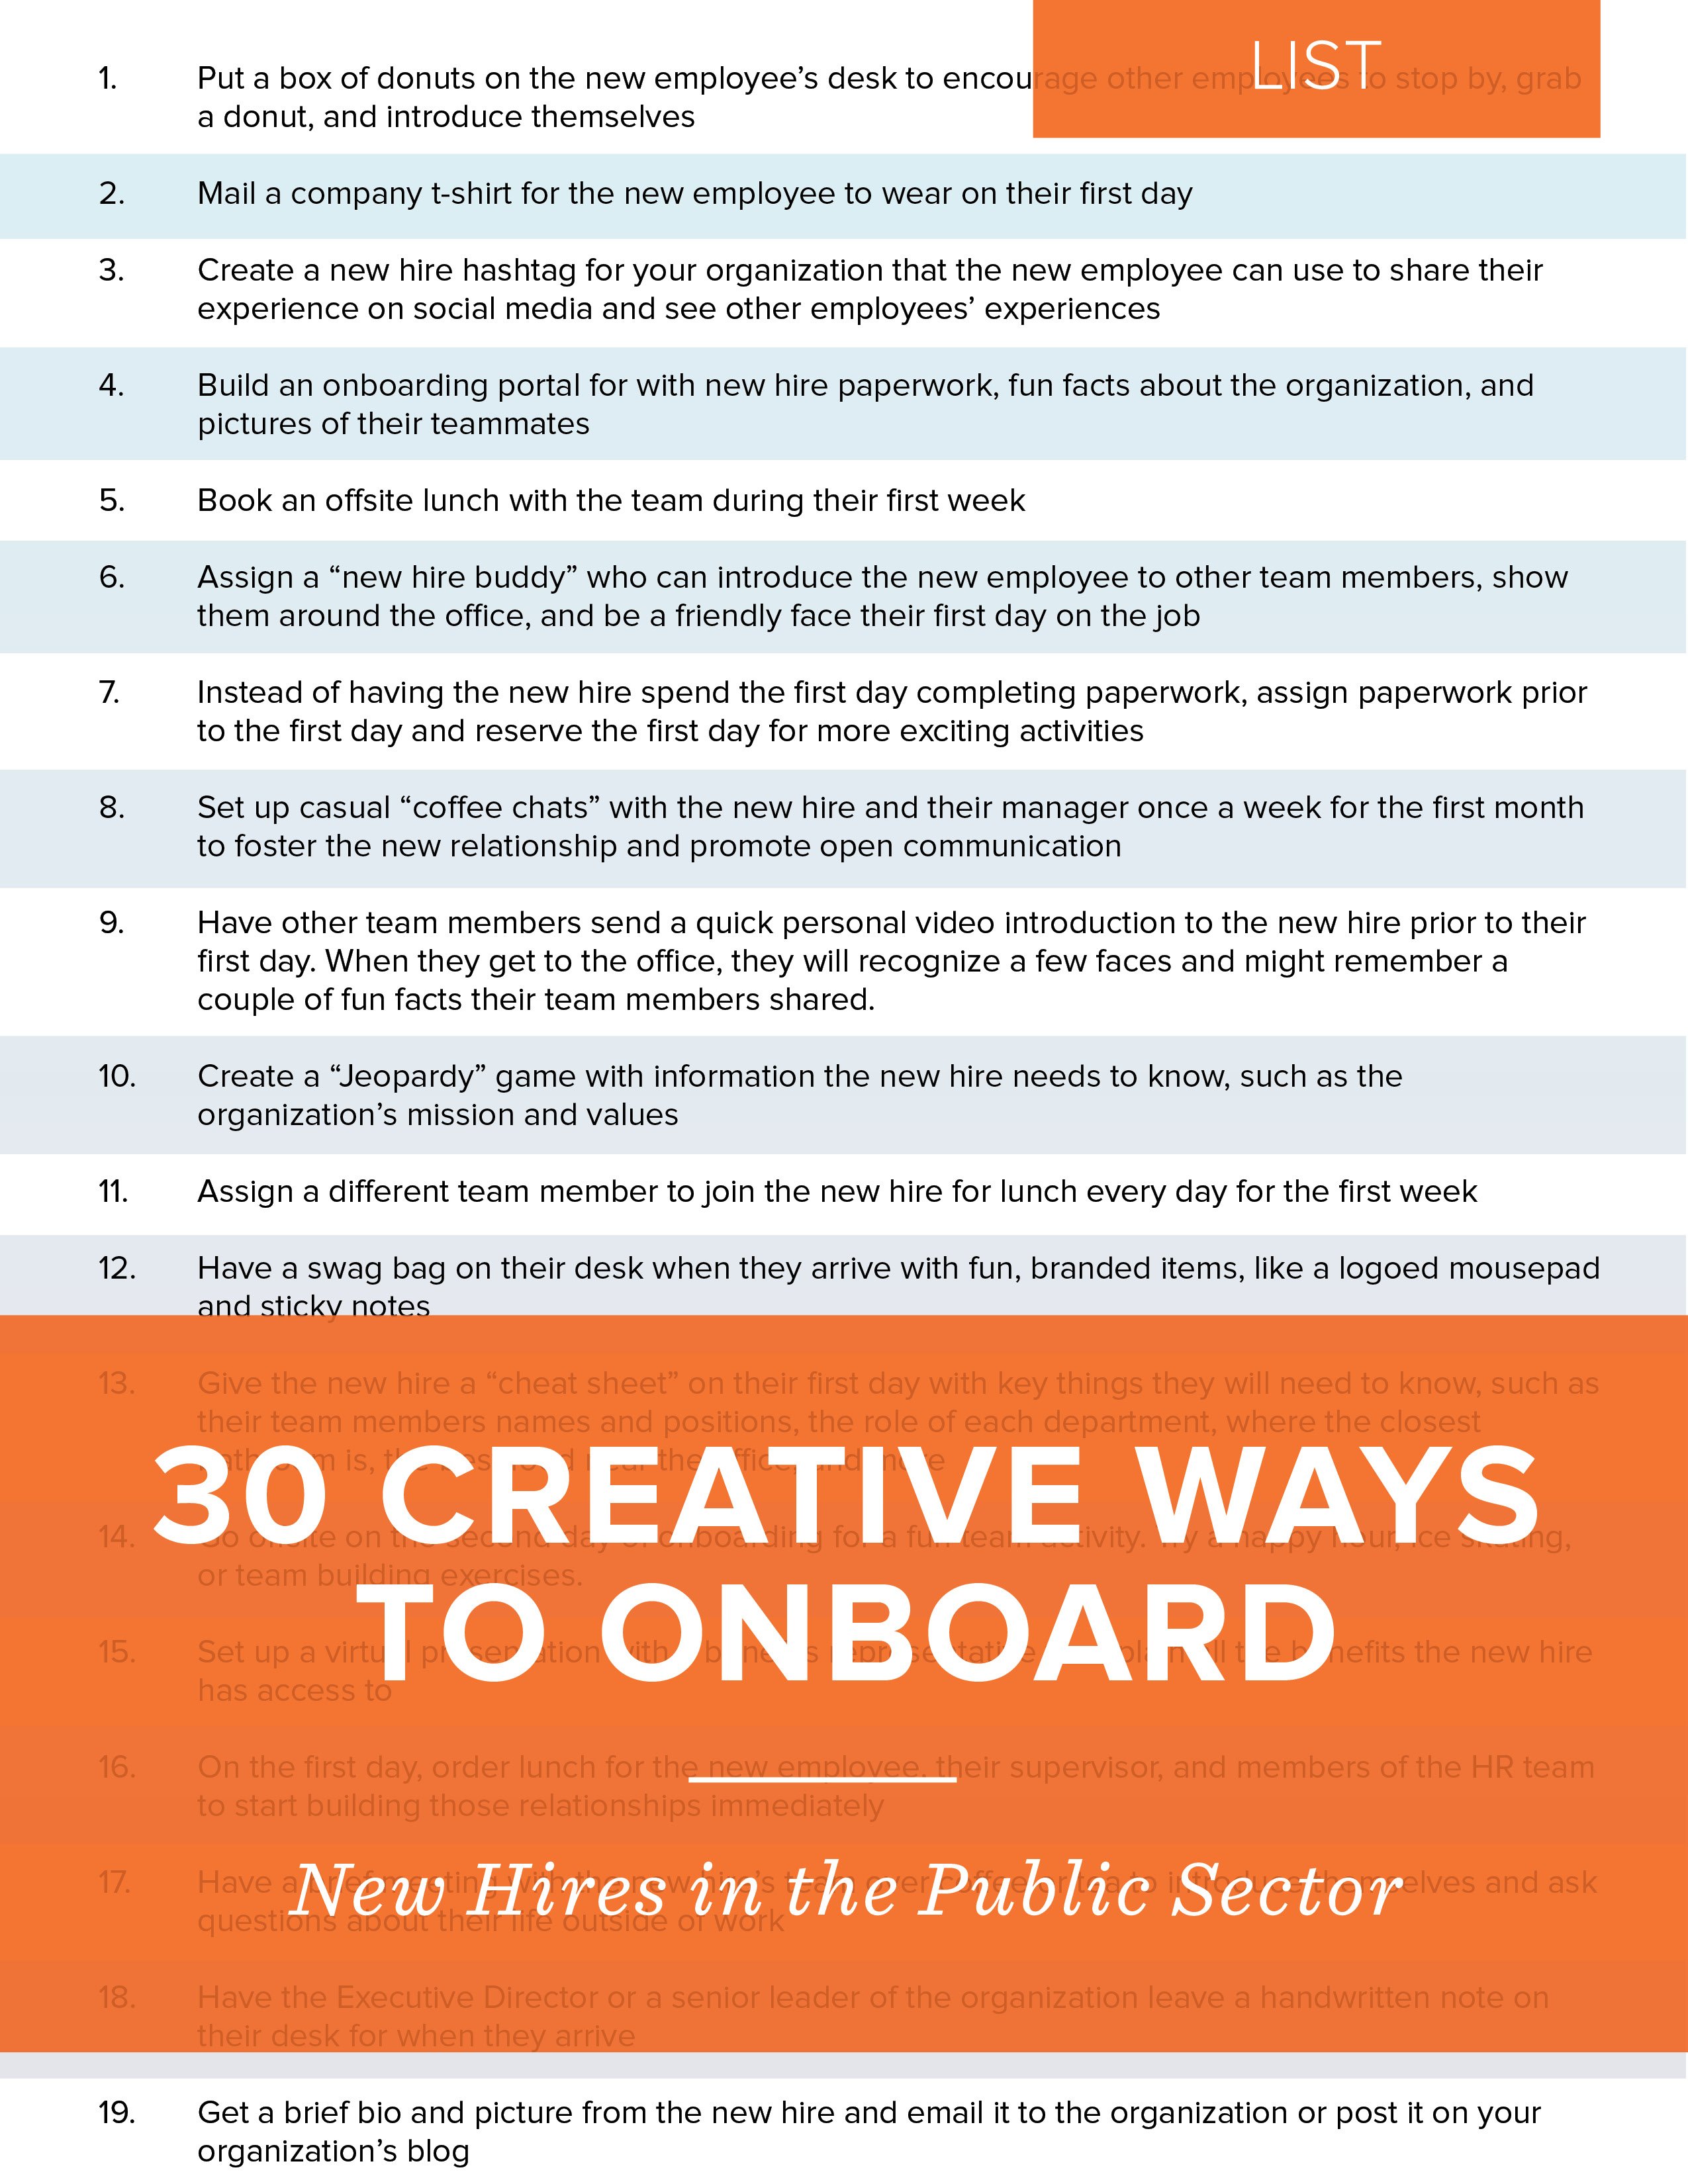 NEOGOV List - 30 Creative Ways to Onboard